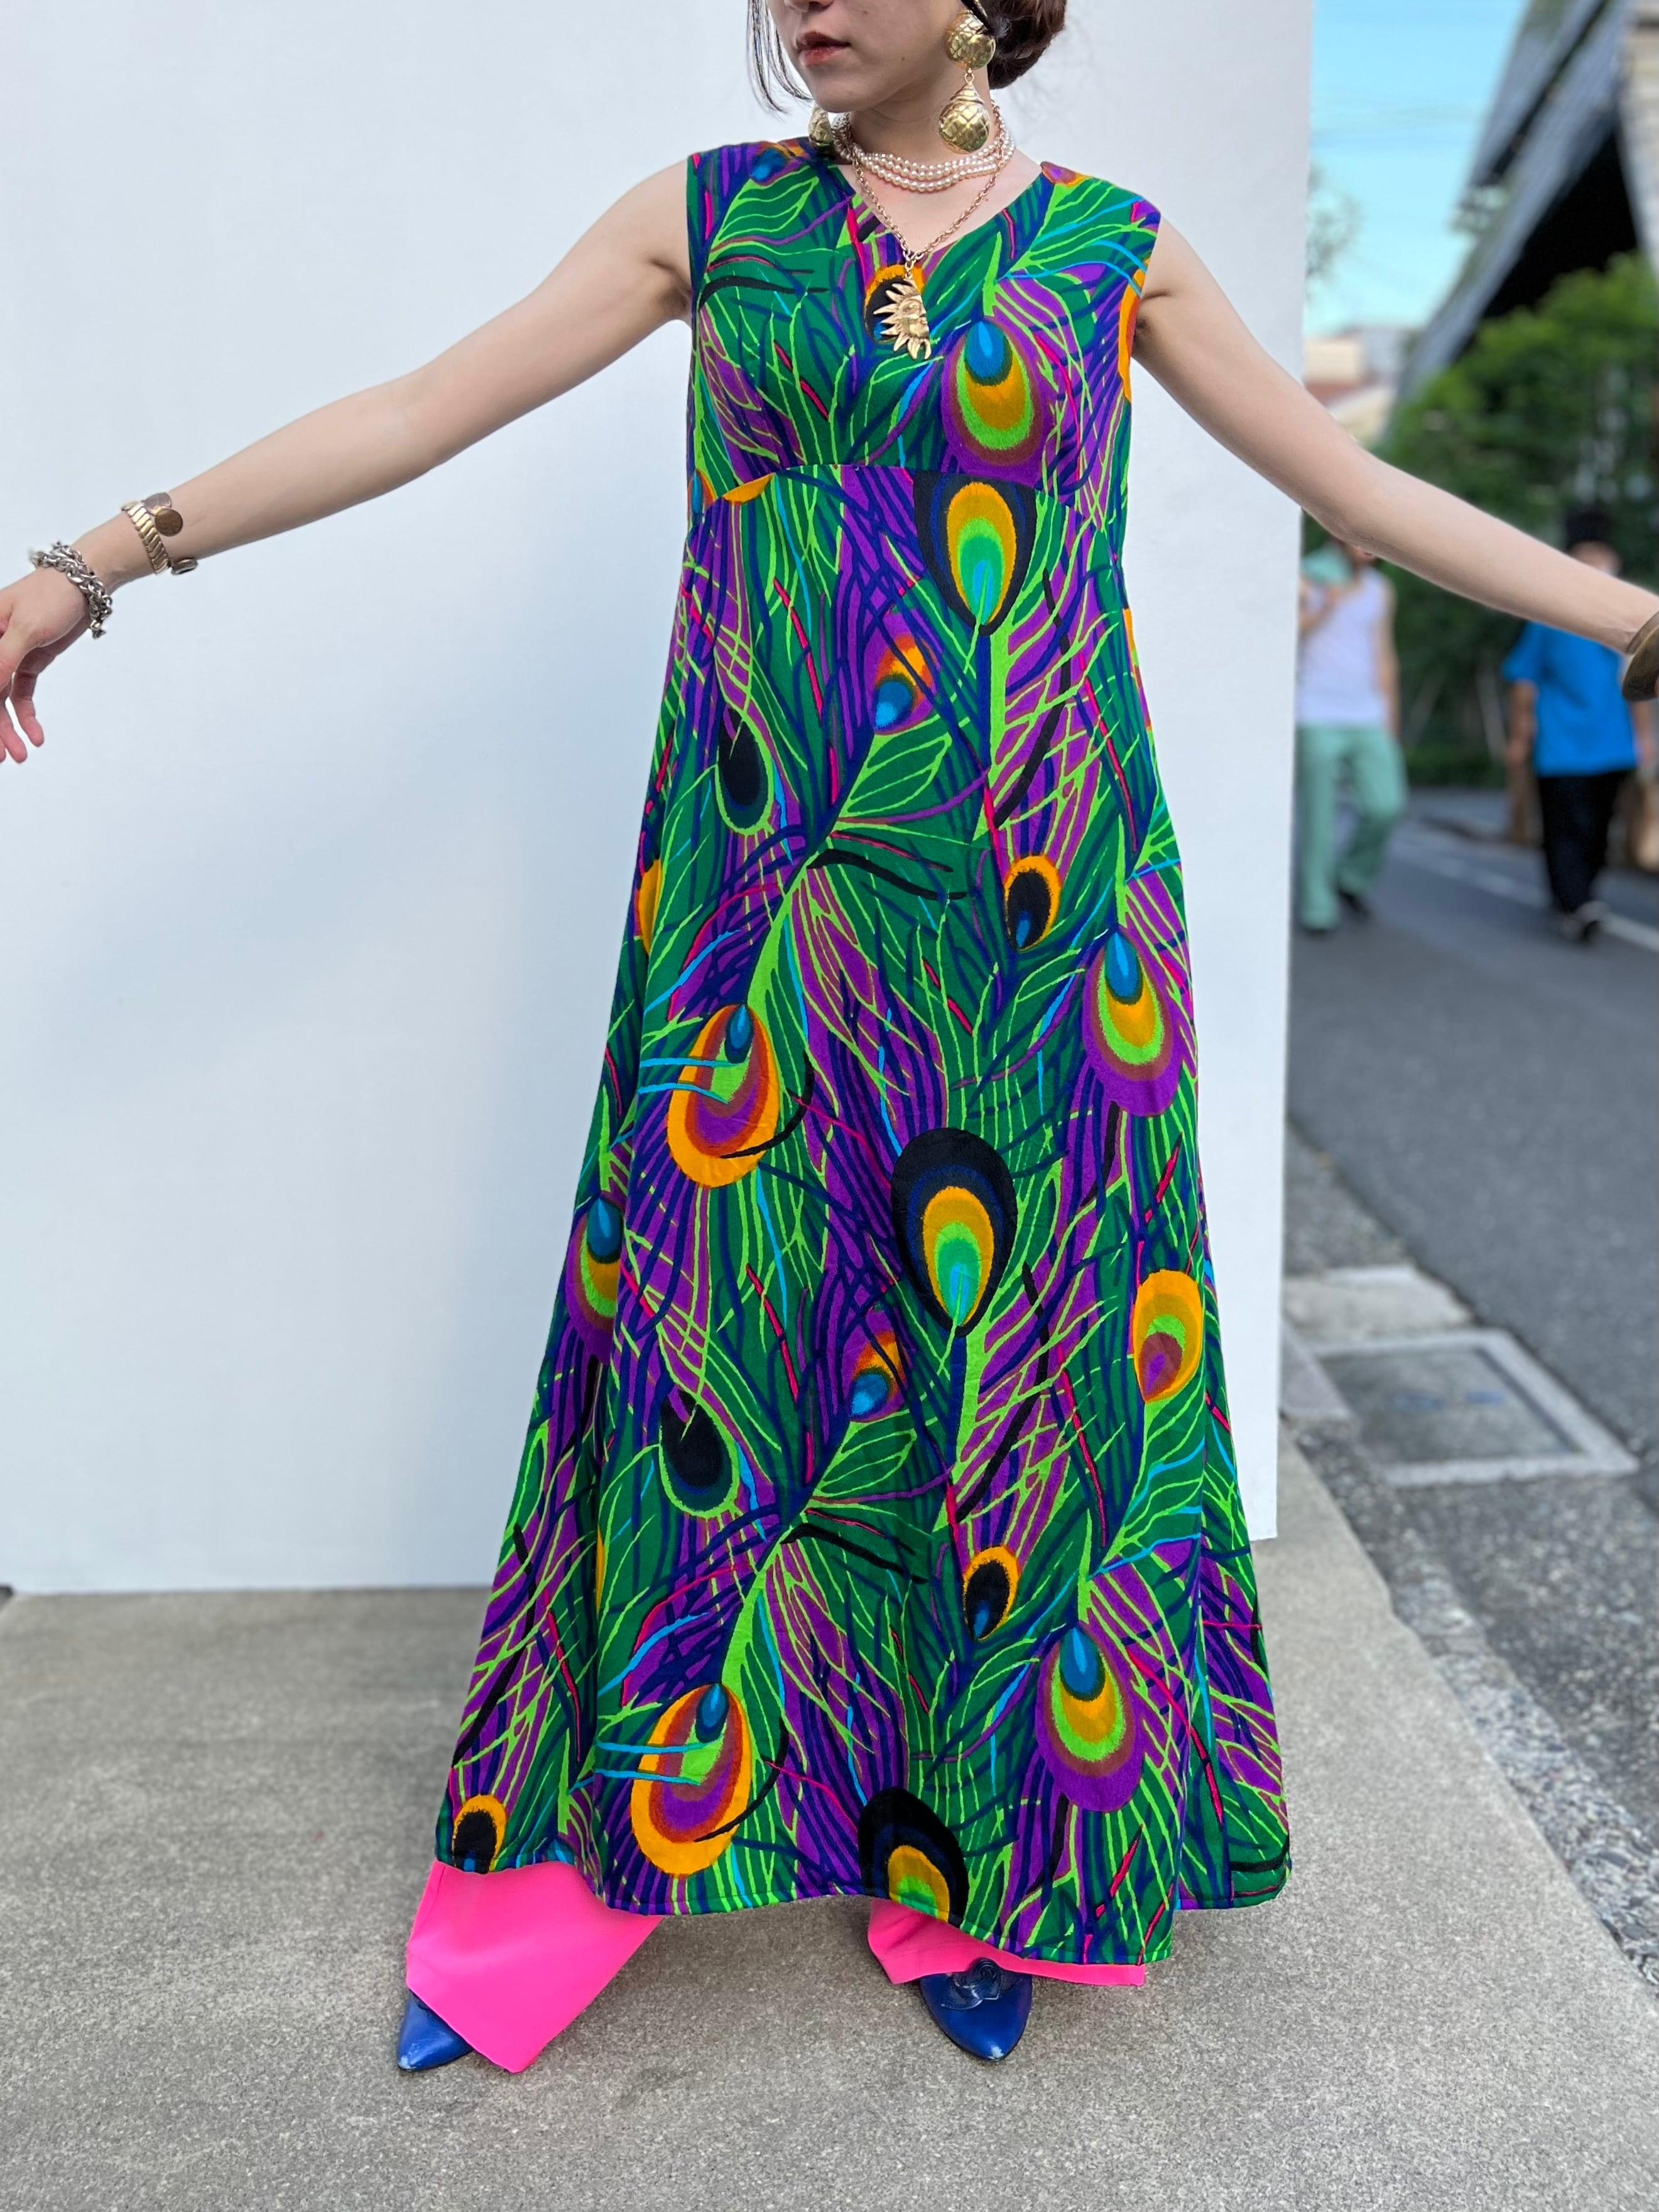 70s hawaiian × peacock sleeveless dress ( ヴィンテージ ハワイアン 孔雀柄 ノースリーブ ワンピース ) |  Riyad vintage shop powered by BASE